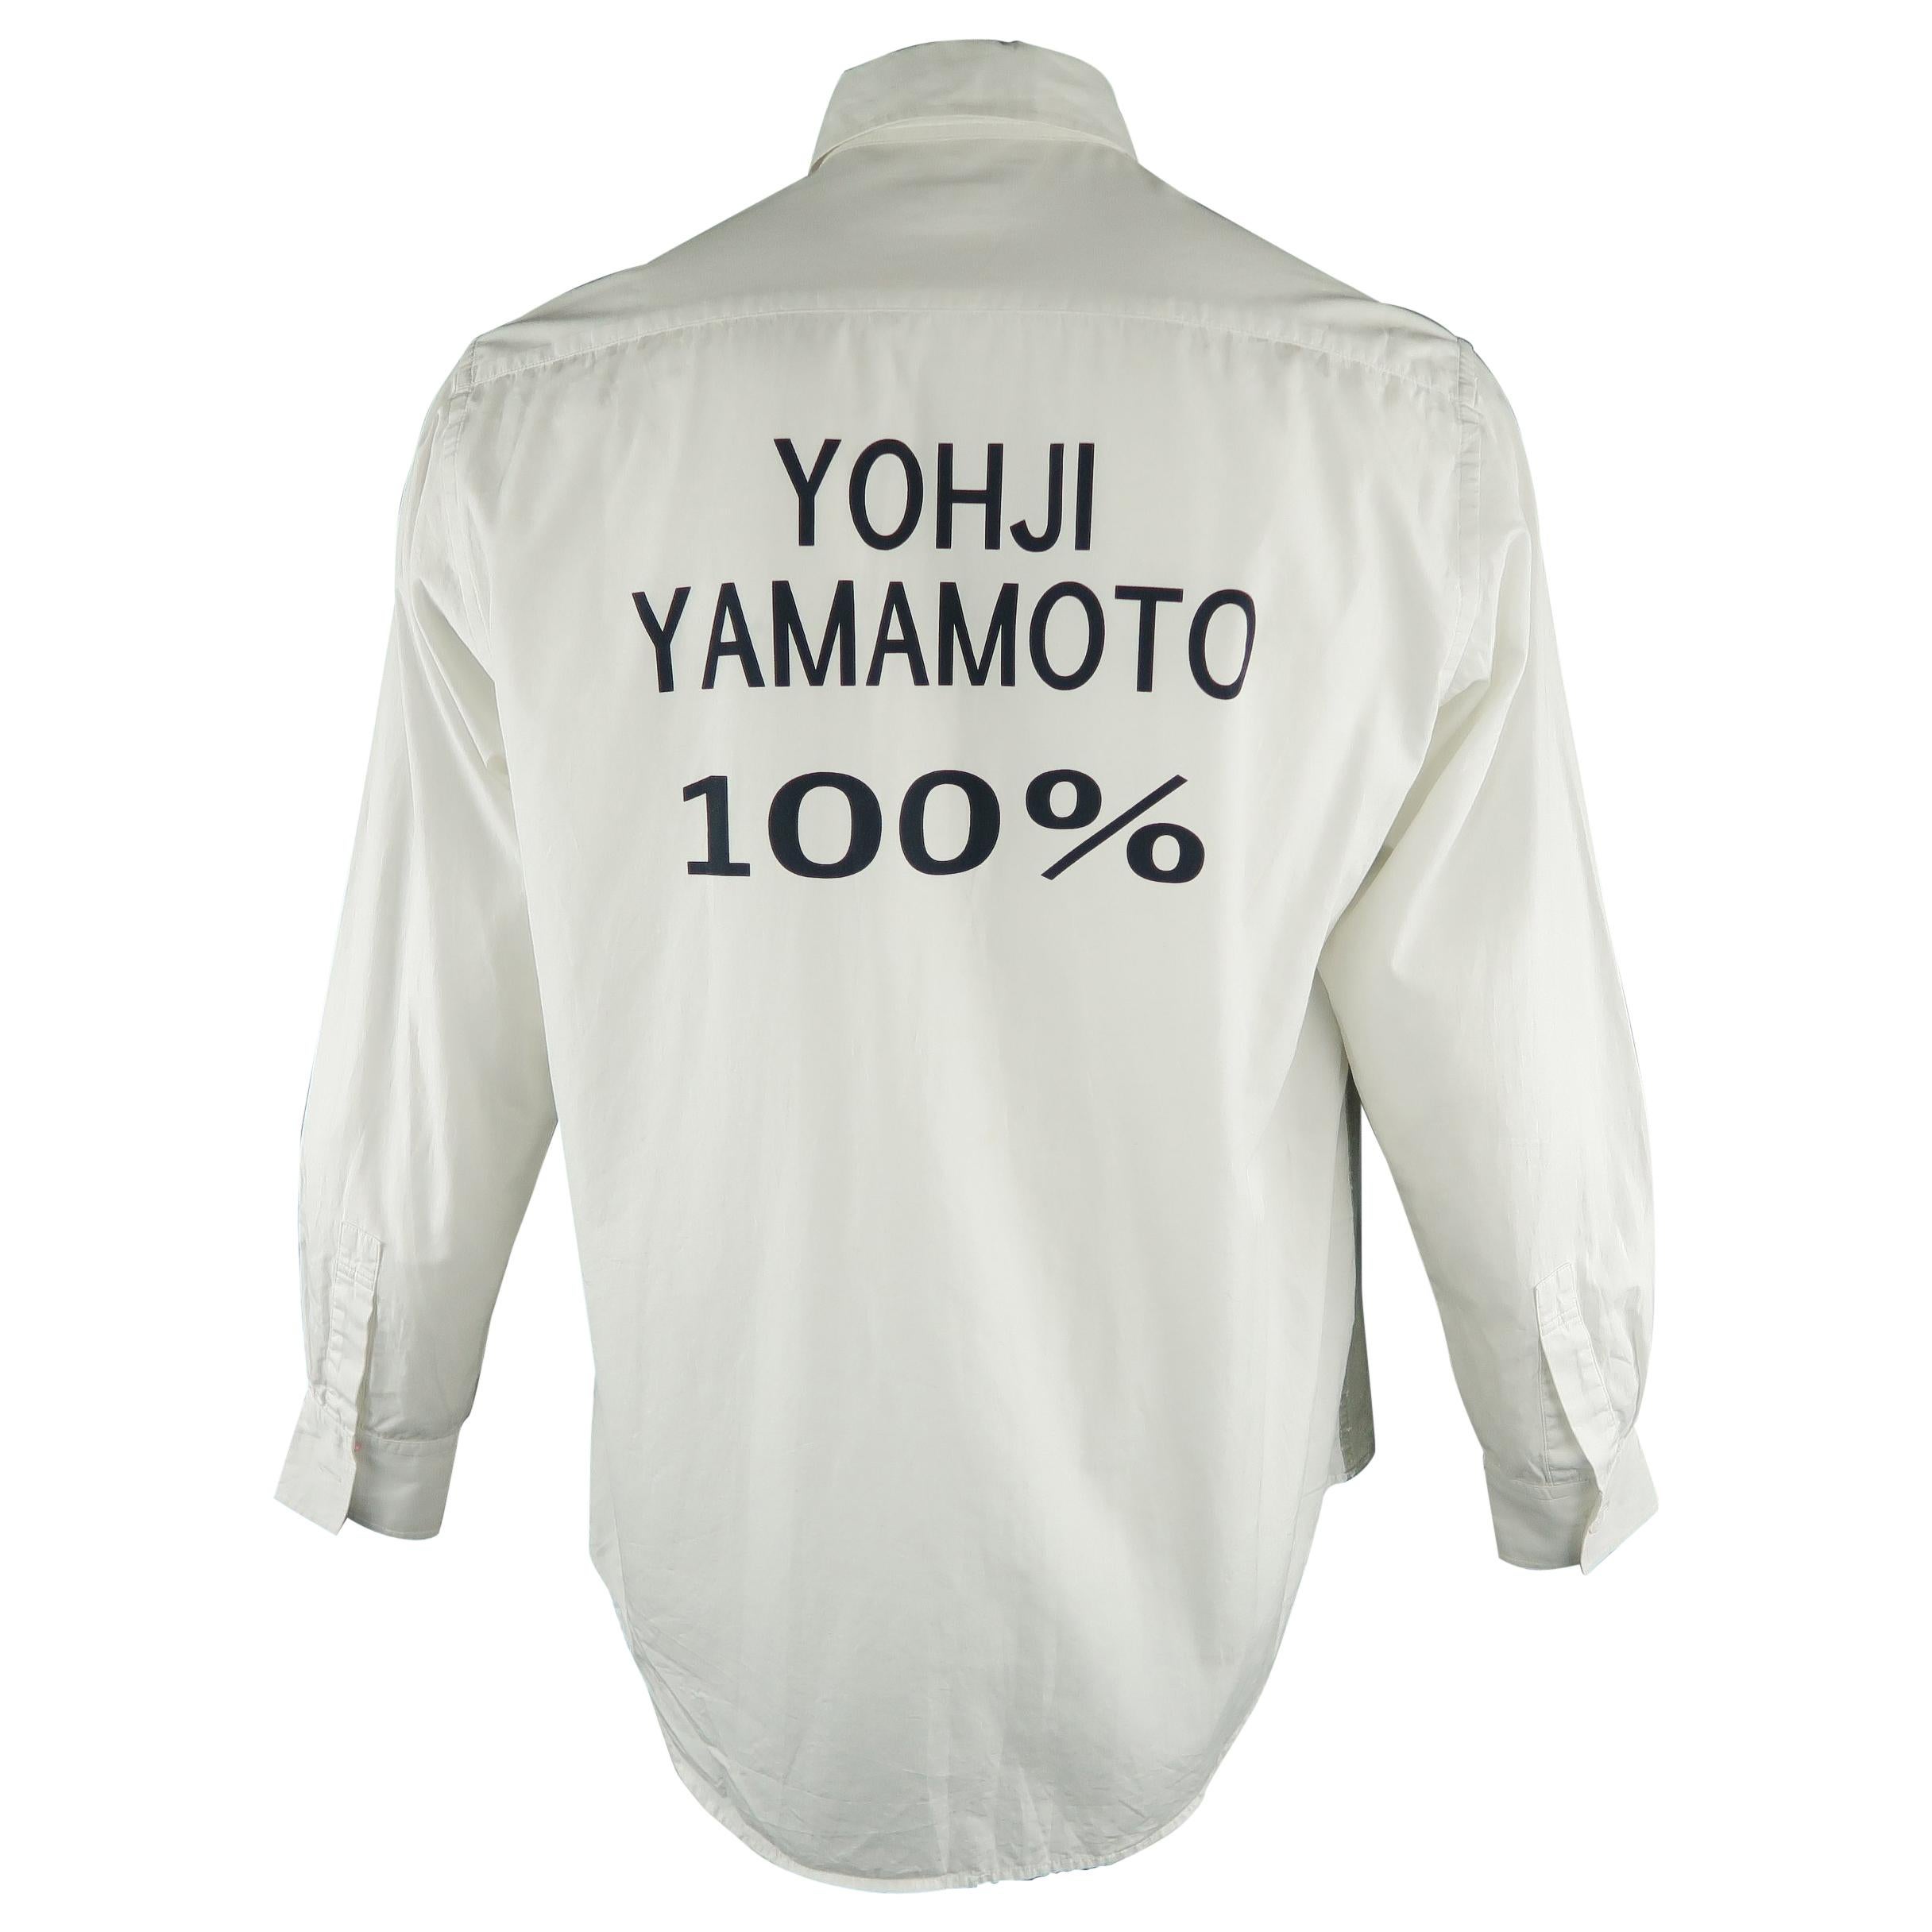 YOHJI YAMAMOTO Shirt - 100% - Size L White Graphic Cotton Long Sleeve Shirt 2007